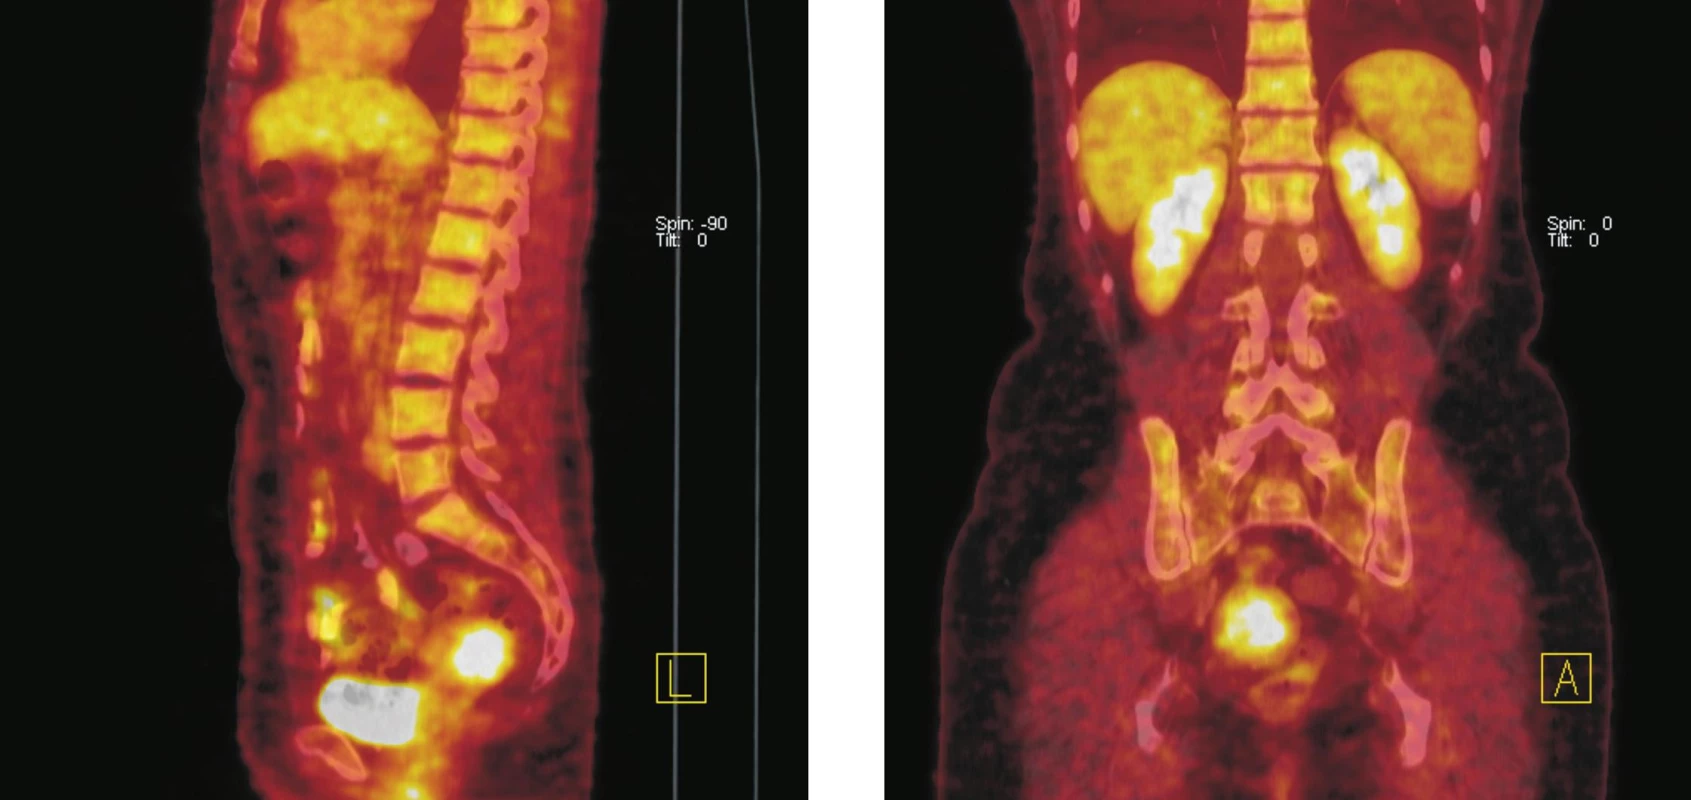 Fúze PET a CT řezů–sagitální rovina (vlevo), koronální rovina (vpravo). Ve fundu dělohy lze na CT diferencovat hyperdenzní formaci o průměru 36 mm se zvýšenou akumulací &lt;sup&gt;18&lt;/sup&gt;F-FDG. Po srovnání klinických a ultrazvukových nálezů z posledních 5 let (gynekolog) a vstupního CT vyšetření bylo konstatováno, že se jedná o stacionární leiomyom děložního těla. Kontrolní &lt;sup&gt;18&lt;/sup&gt;F-FDG PET/CT vyšetření o rok později potvrdilo neměnnost nálezu.